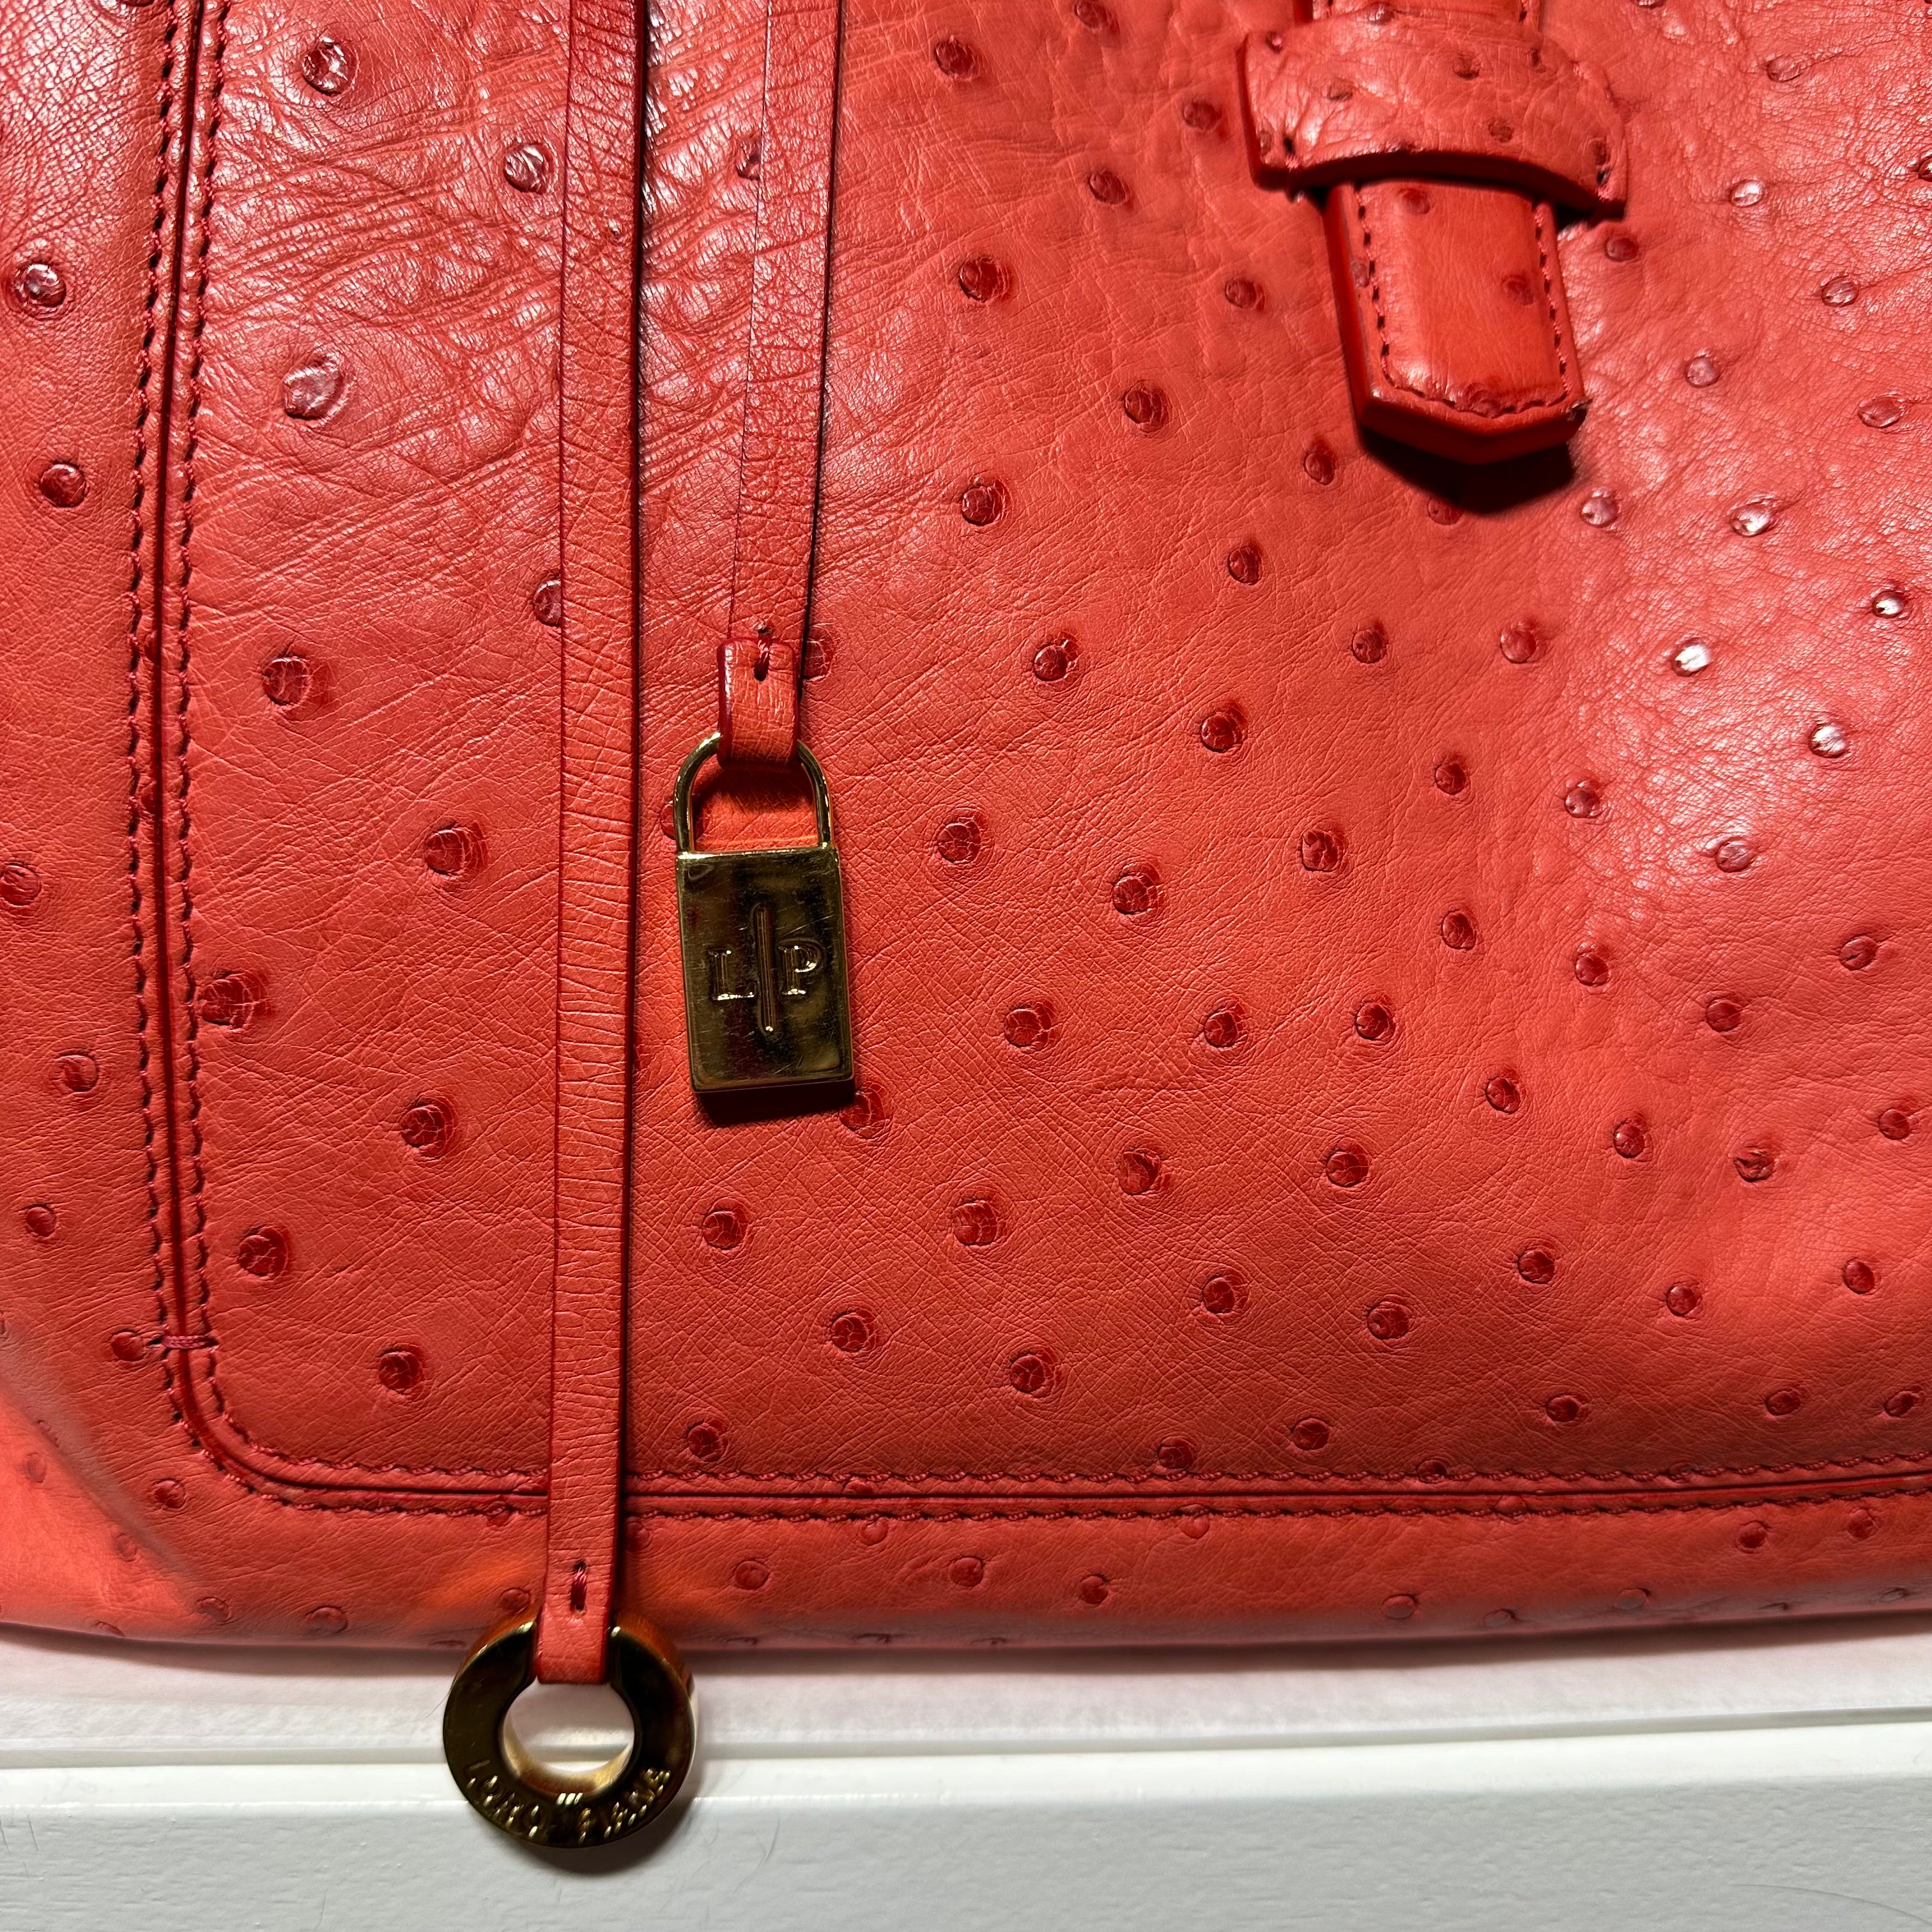 Loto Piana - Bellevue handbag